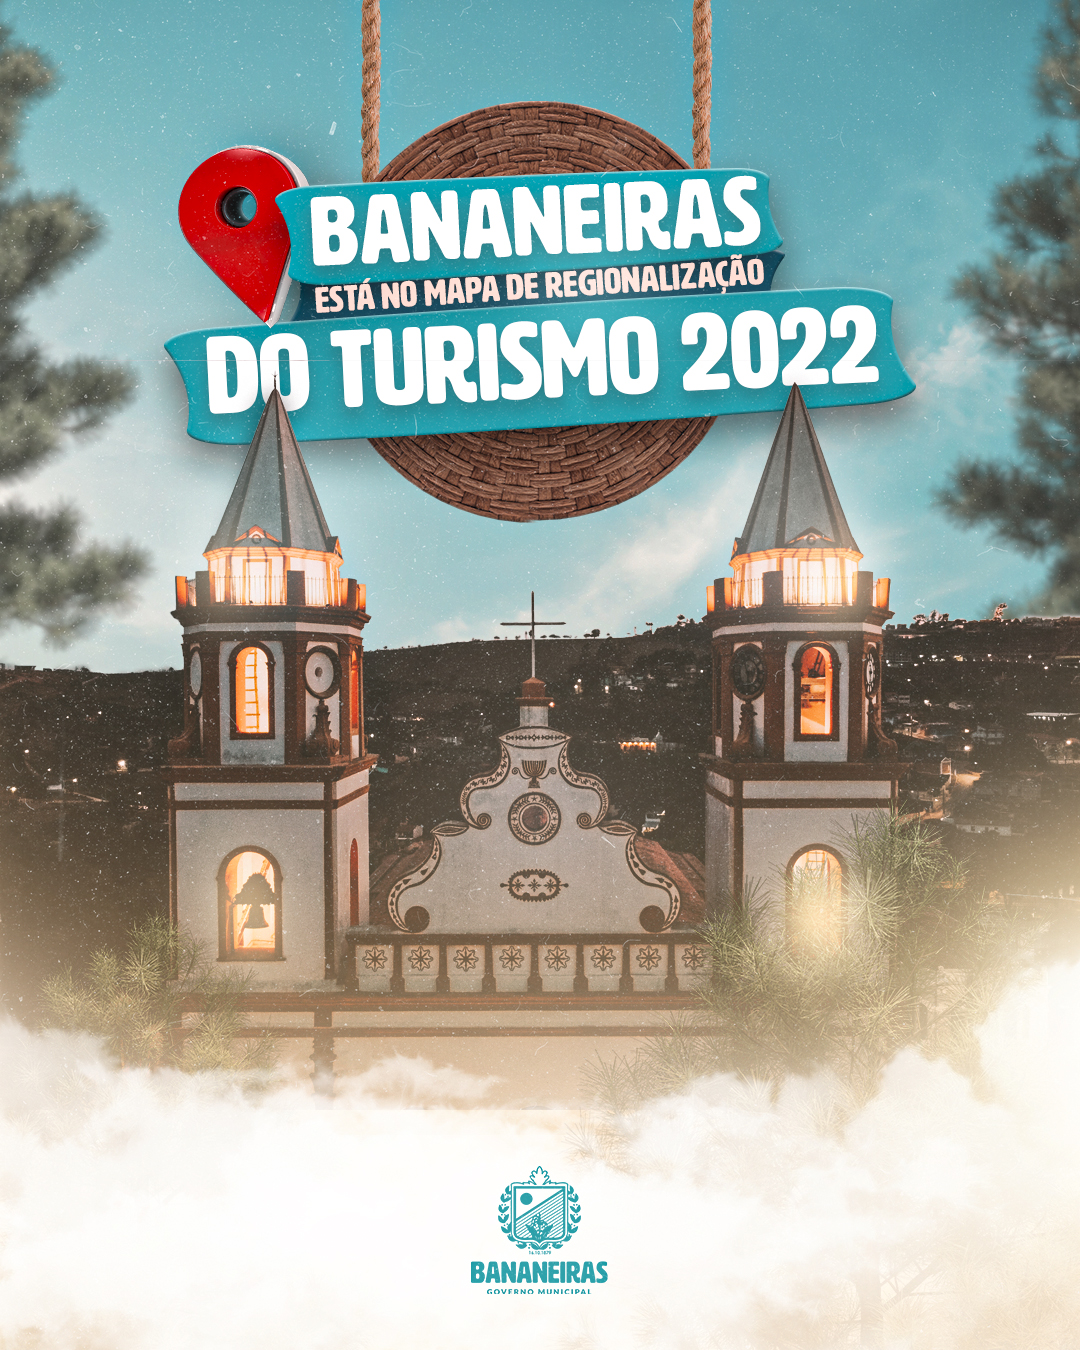 Bananeiras está no mapa de regionalização do turismo 2022